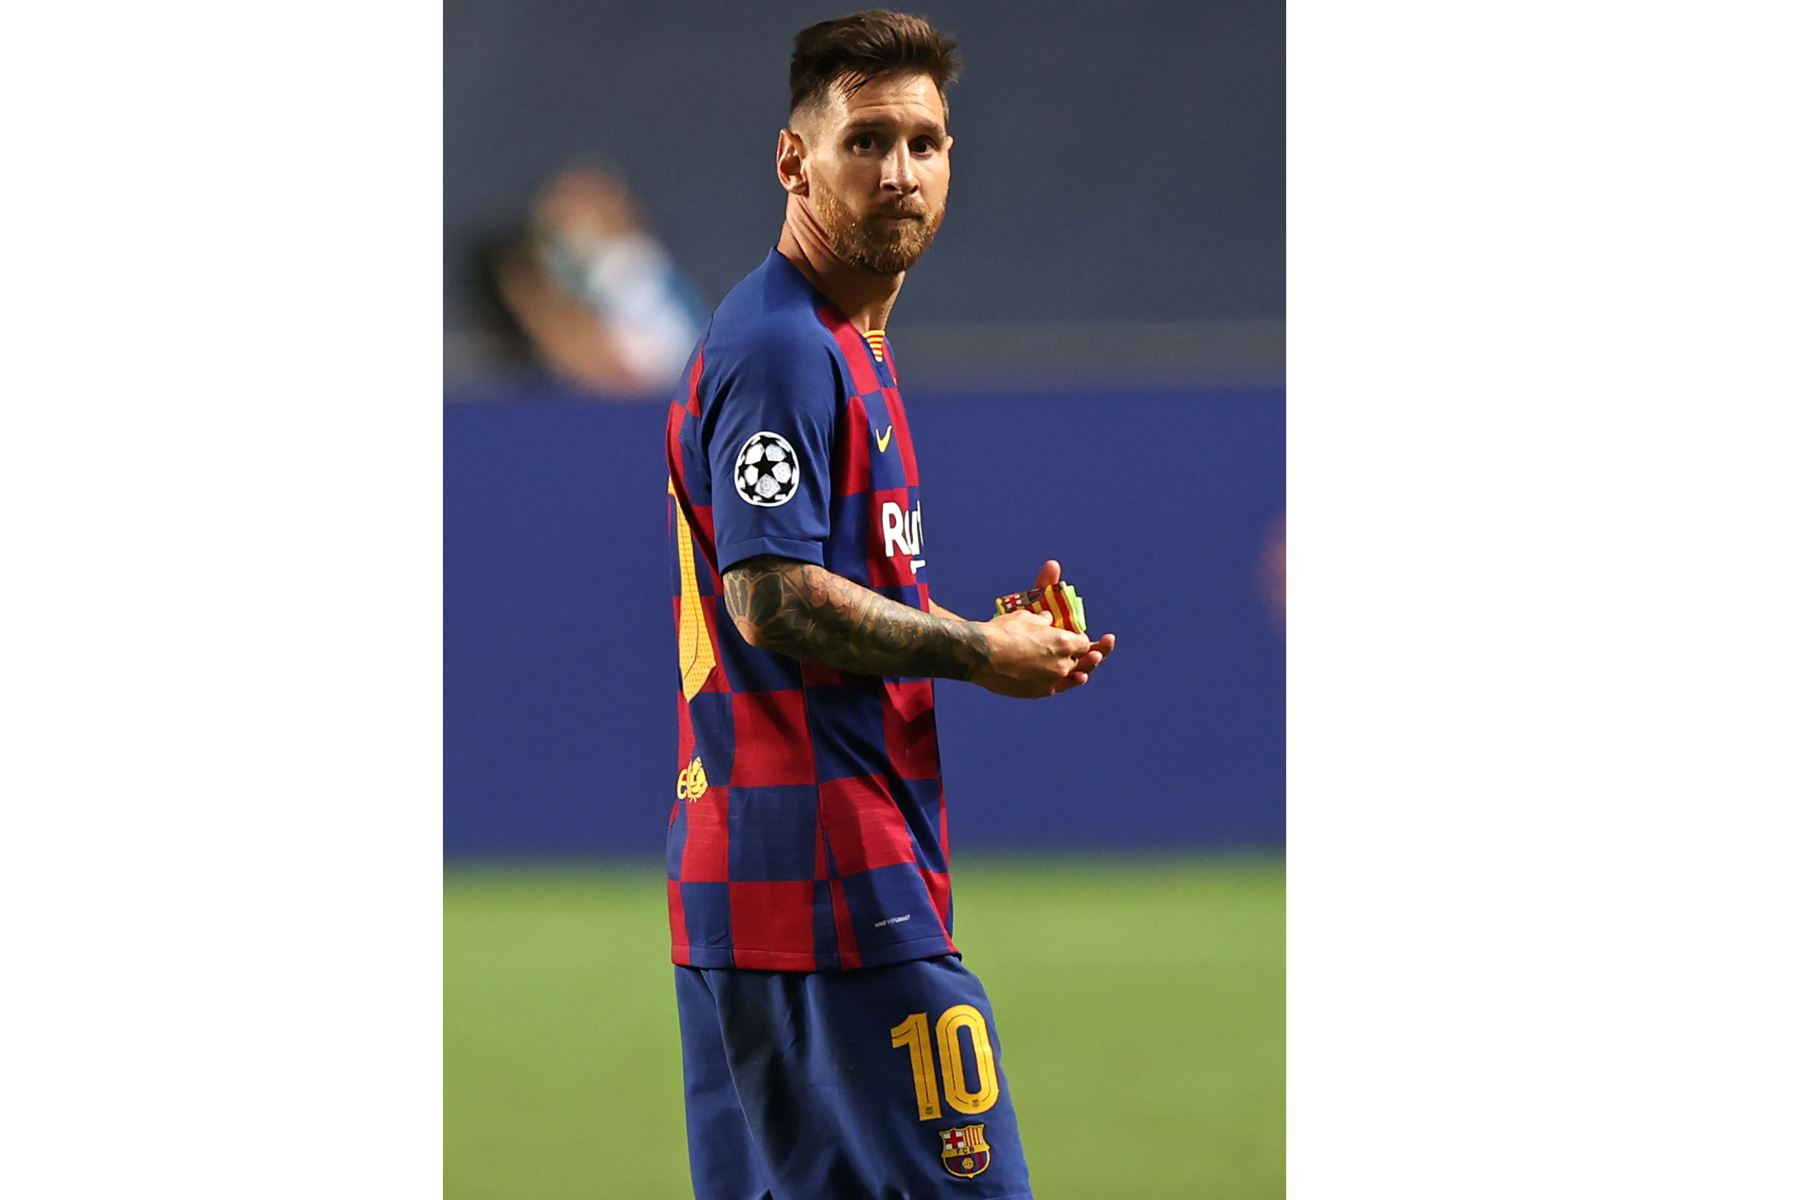 El delantero argentino del Barcelona Lionel Messi reacciona al final del partido de fútbol de cuartos de final de la UEFA Champions League entre el Barcelona y el Bayern de Múnich en el estadio Luz de Lisboa.
Foto: AFP